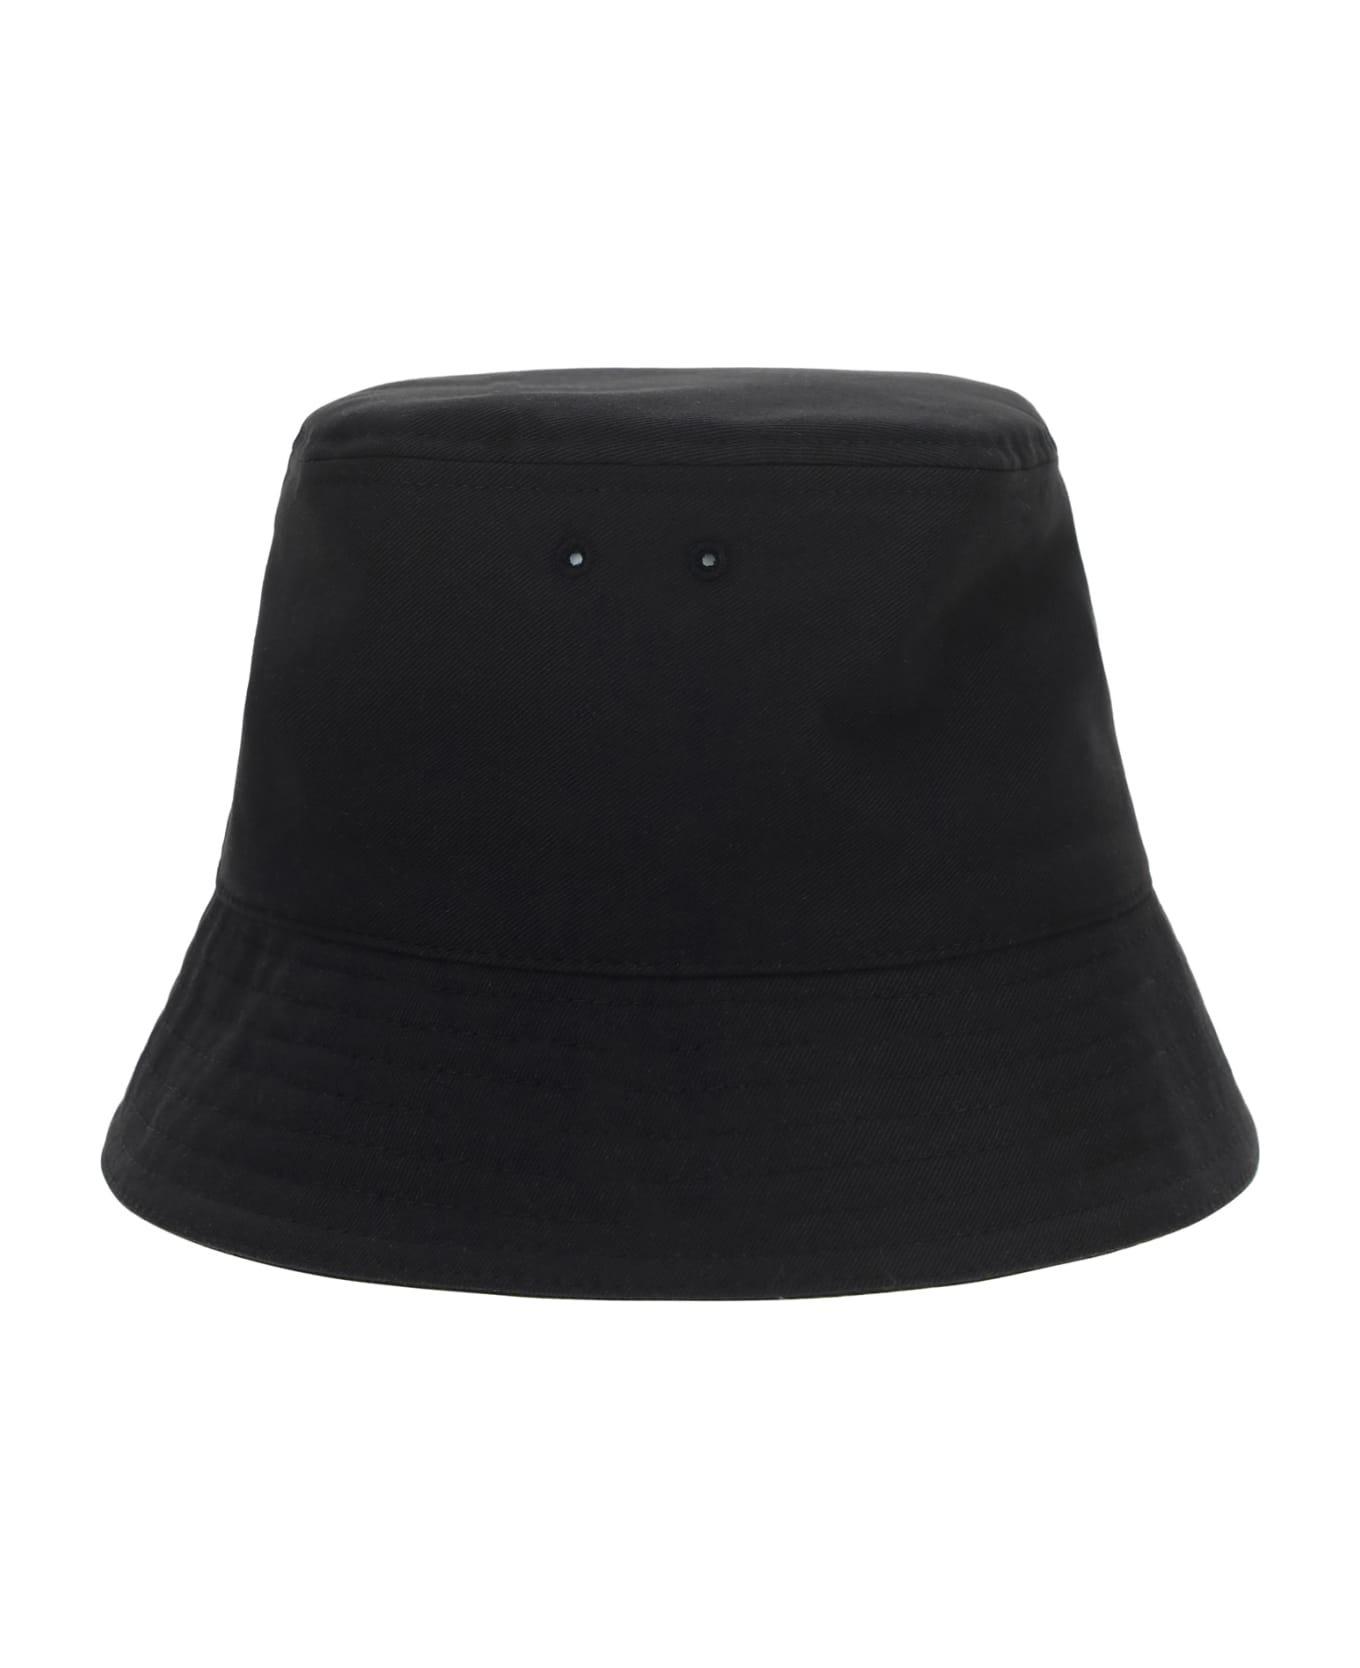 Valentino Garavani 'vltn' Bucket Hat - Nerobianco 帽子